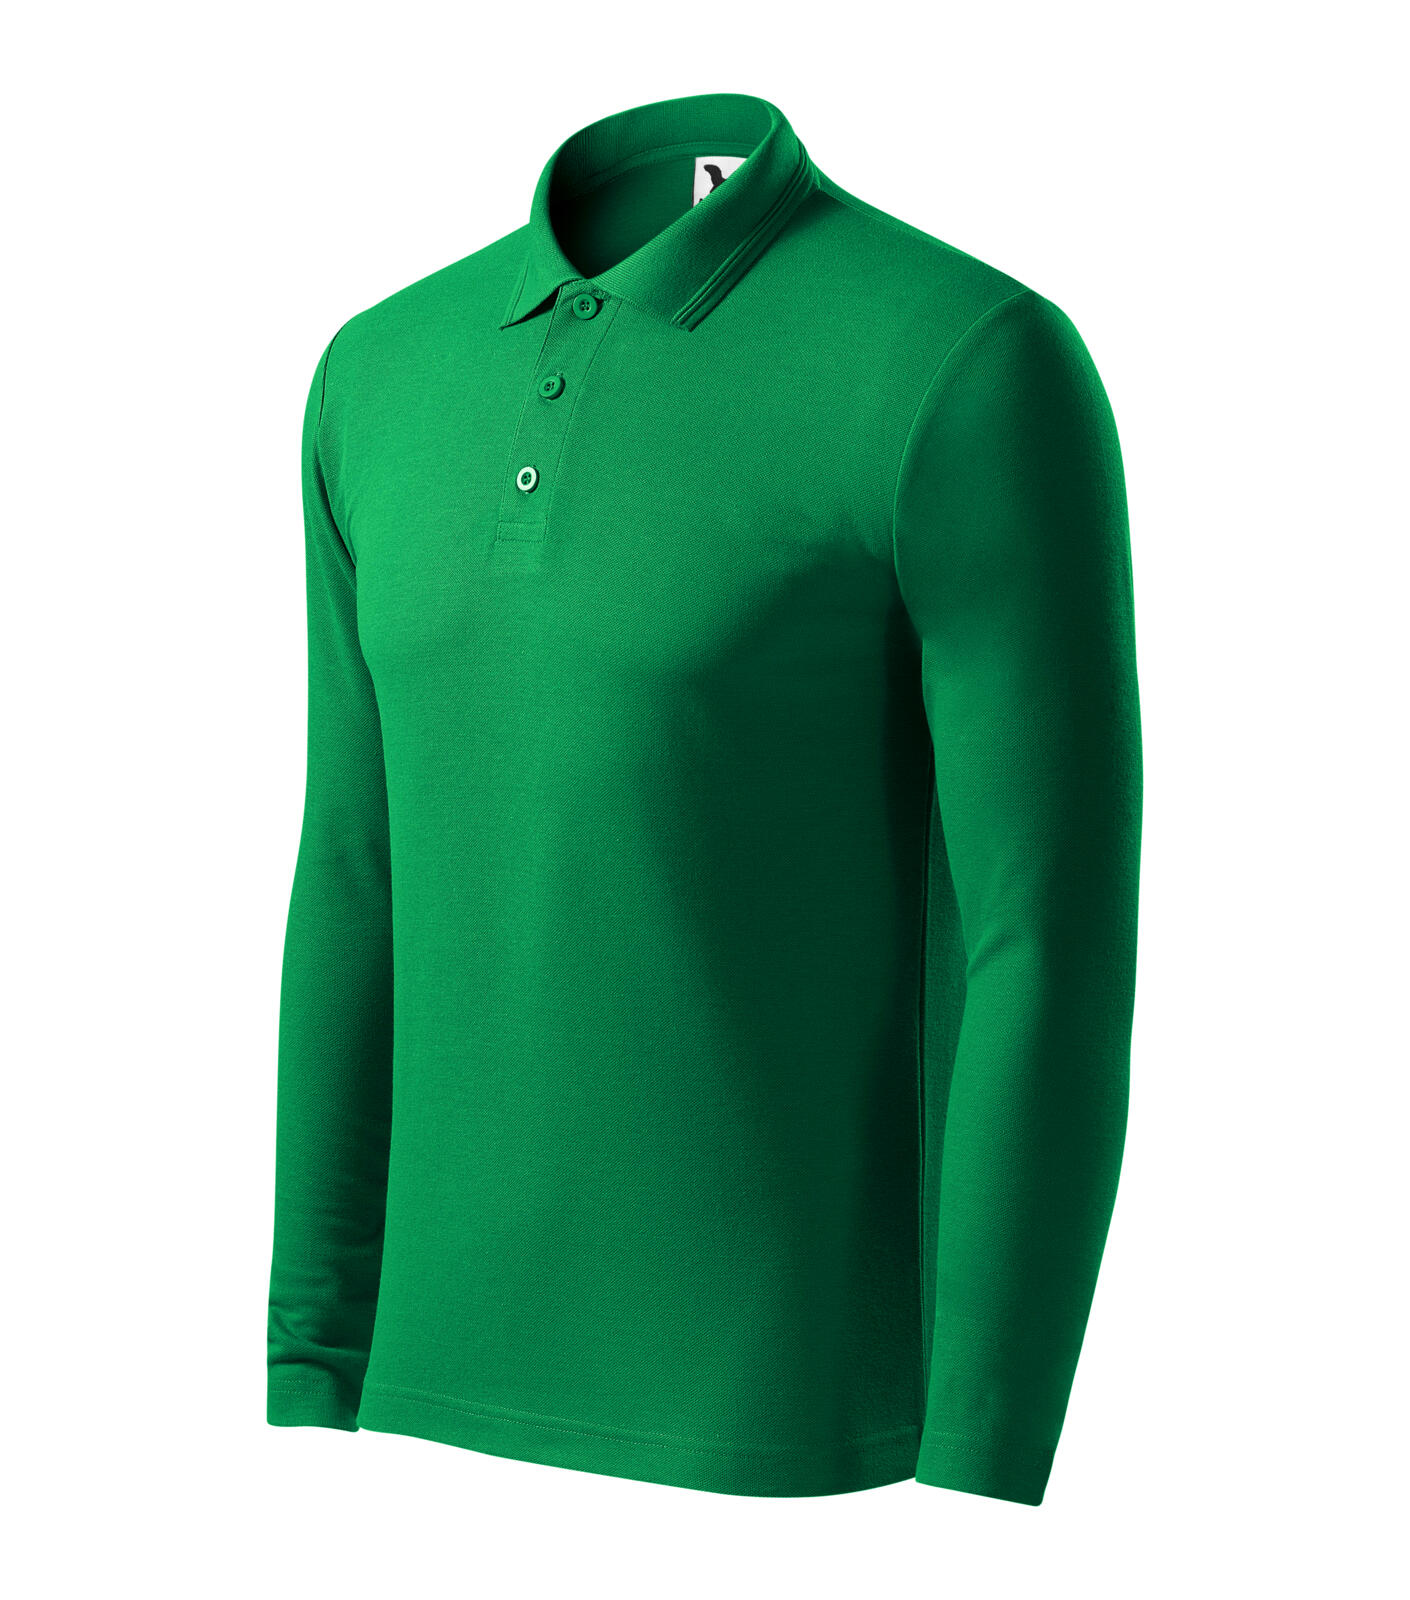 Pique Polo LS Polokošile pánská Barva: středně zelená, Velikost: L